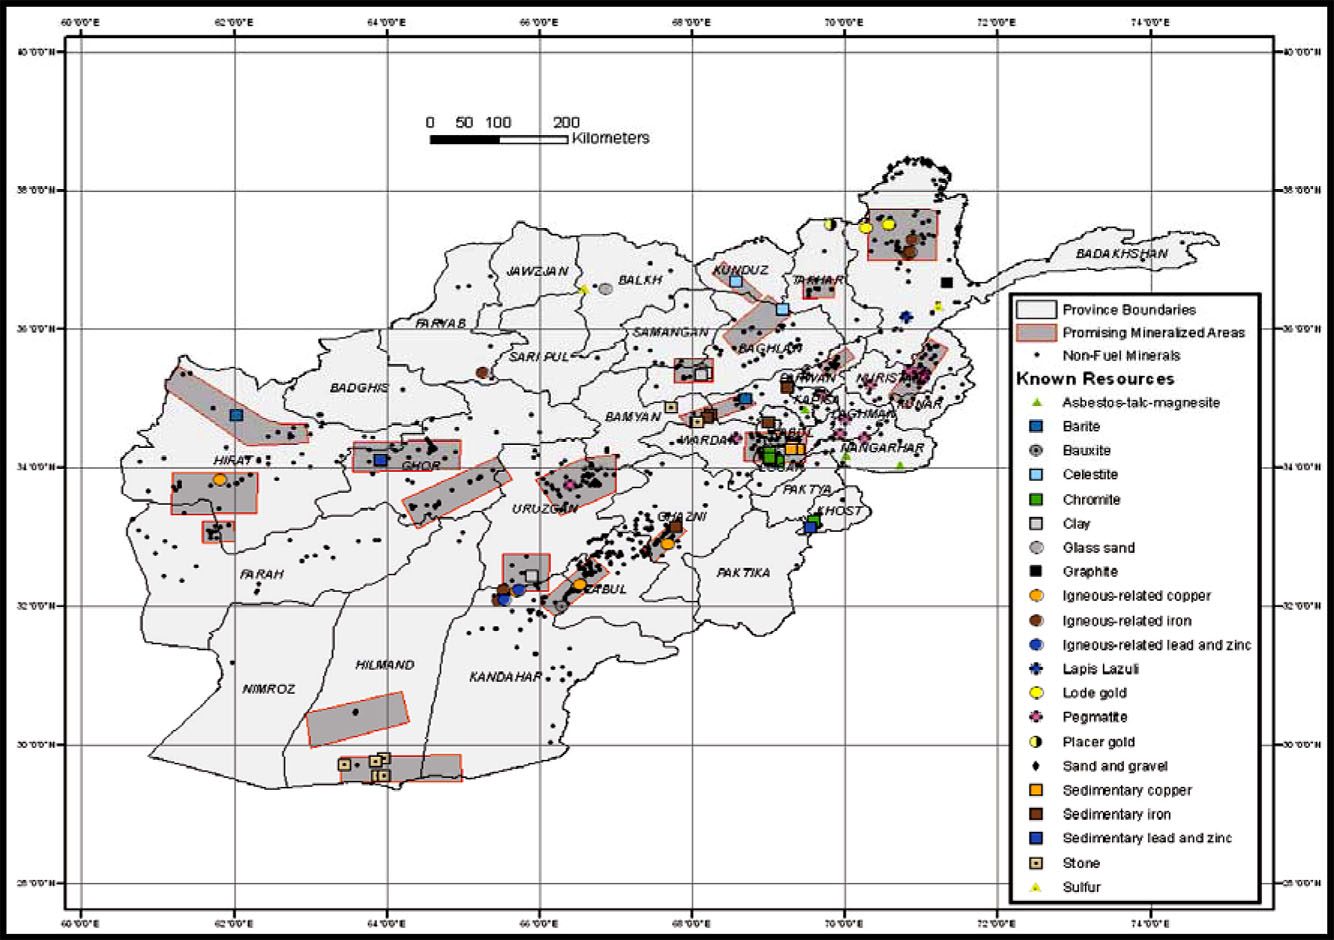 afghanistan_known_resources_2008.jpg